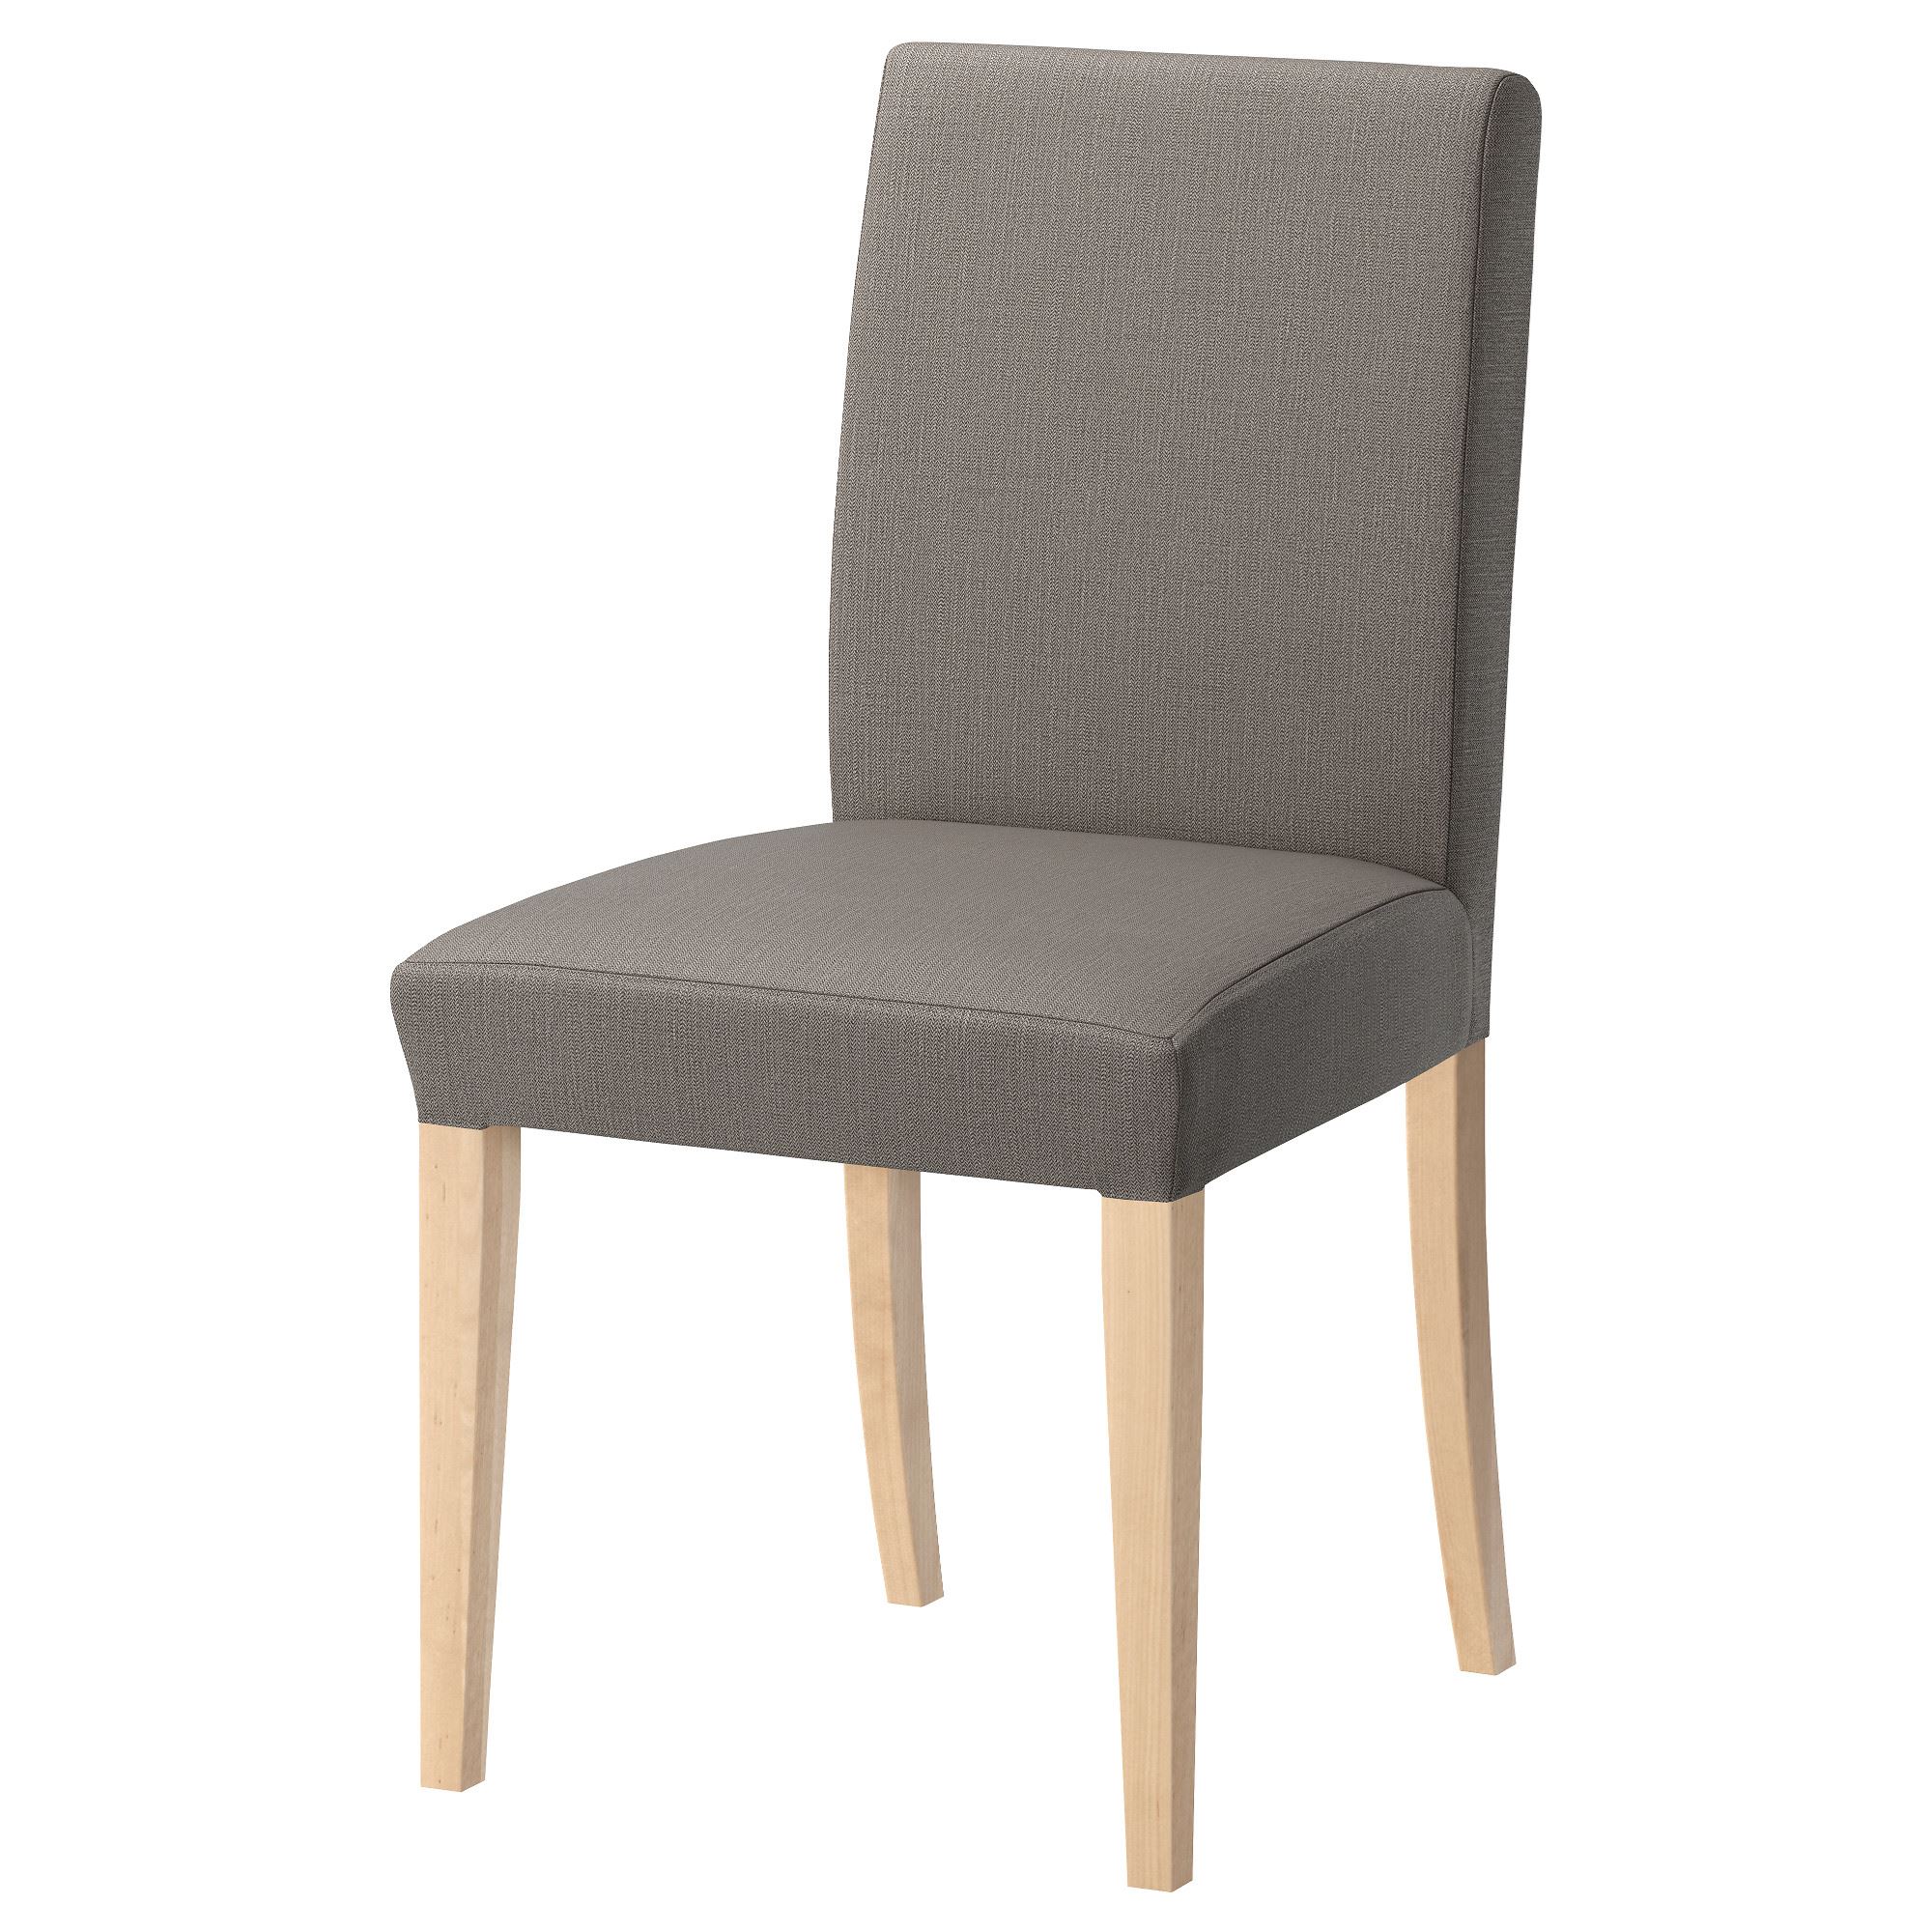 HENRIKSDAL chair birch nolhaga grey beige